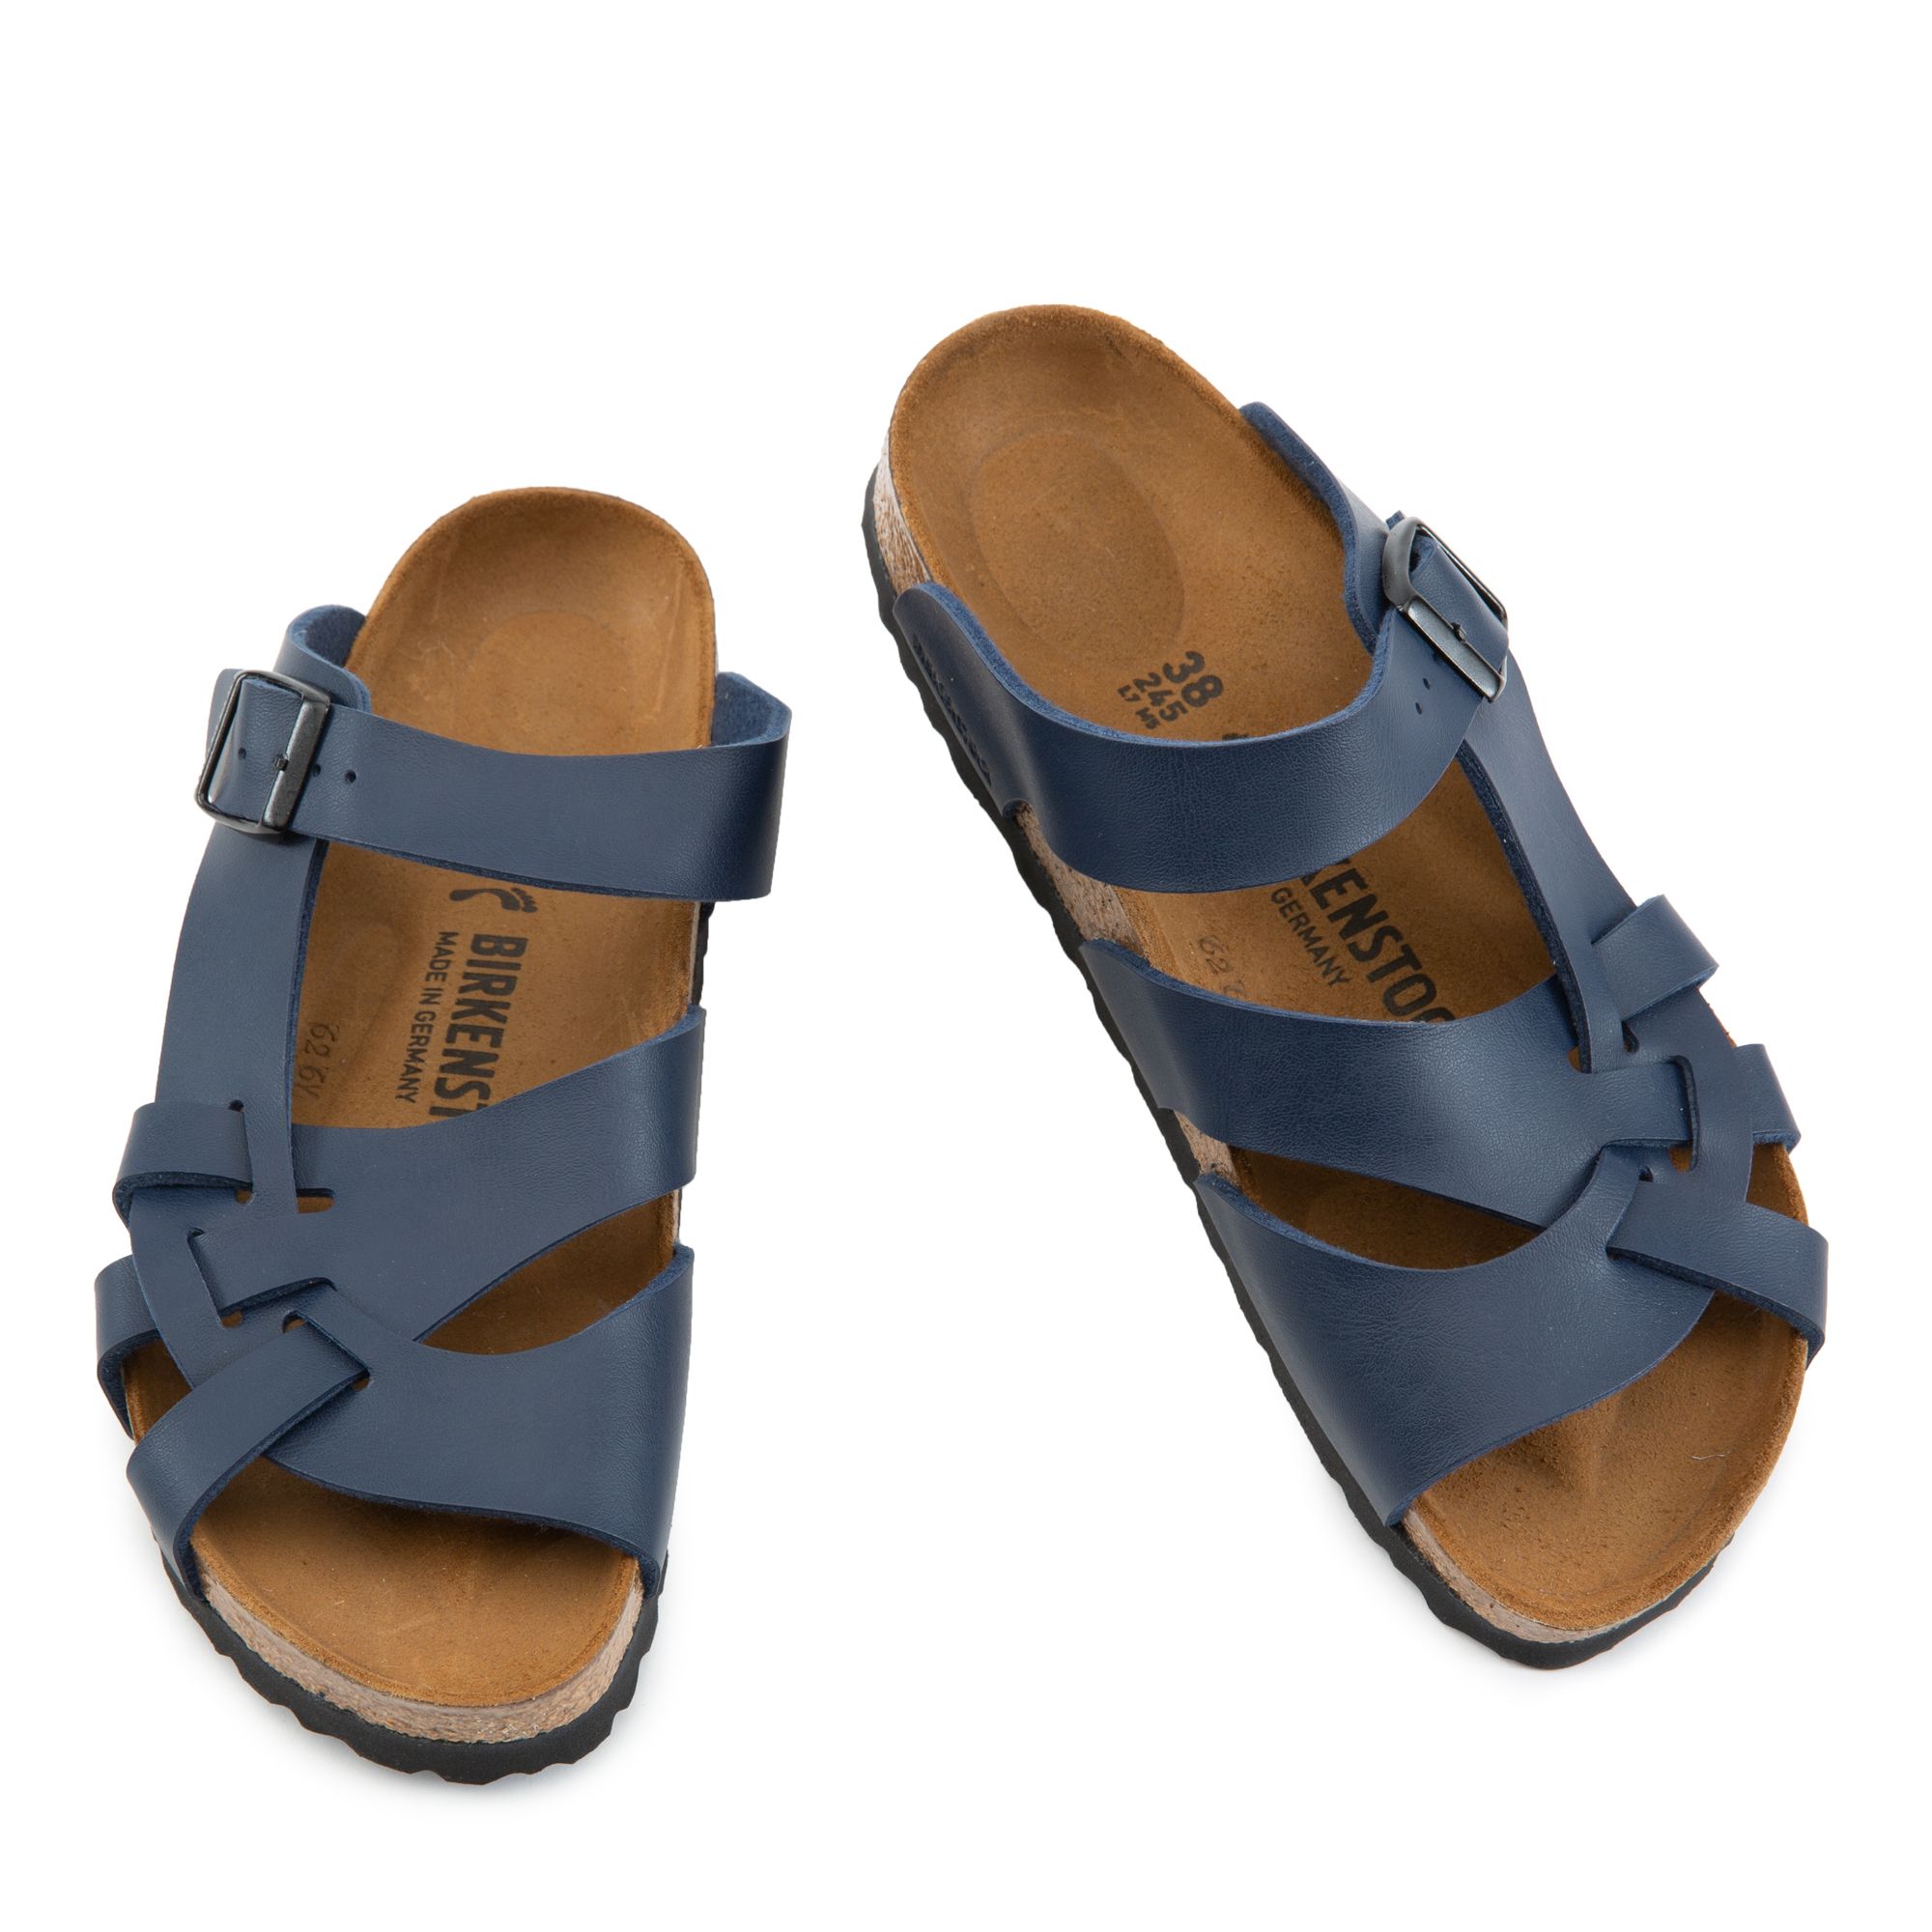 Birkenstock Pisa Sandals for Women